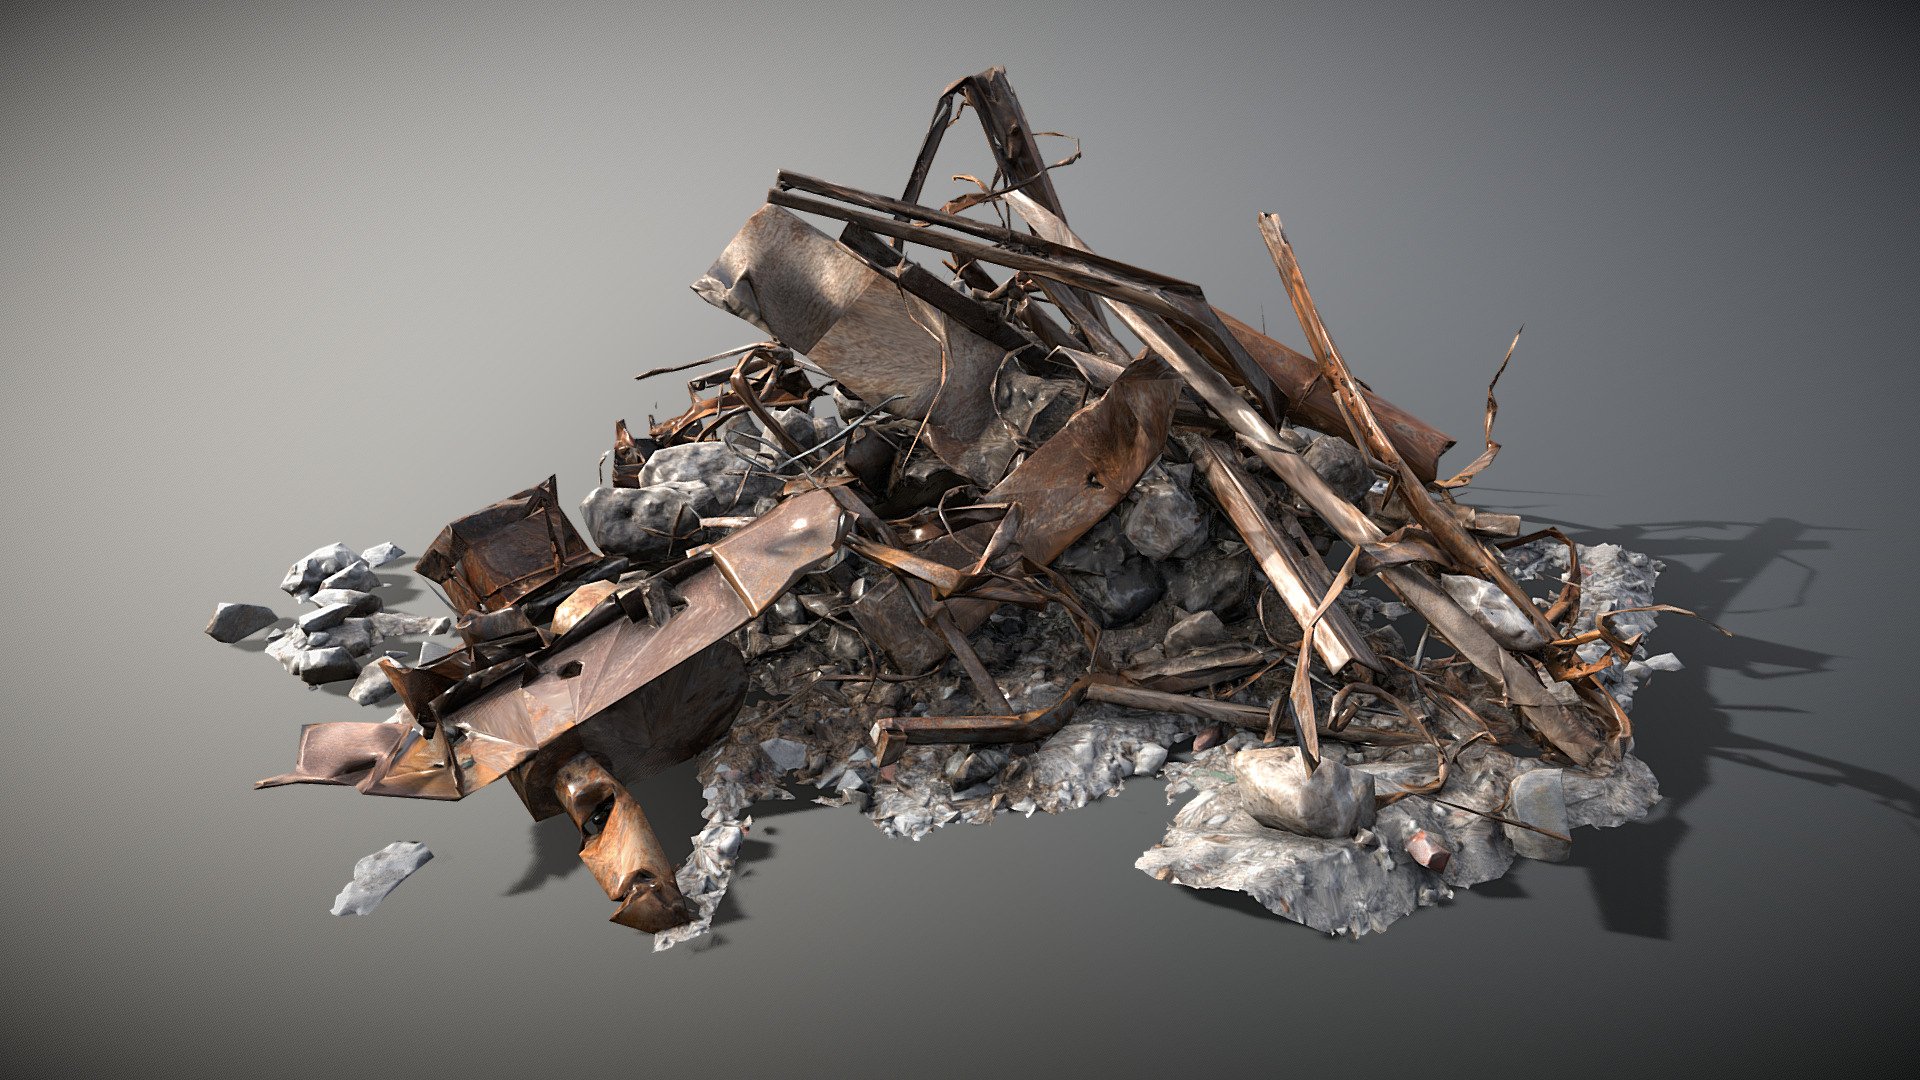 &ldquo;Rusty steel scrap pile